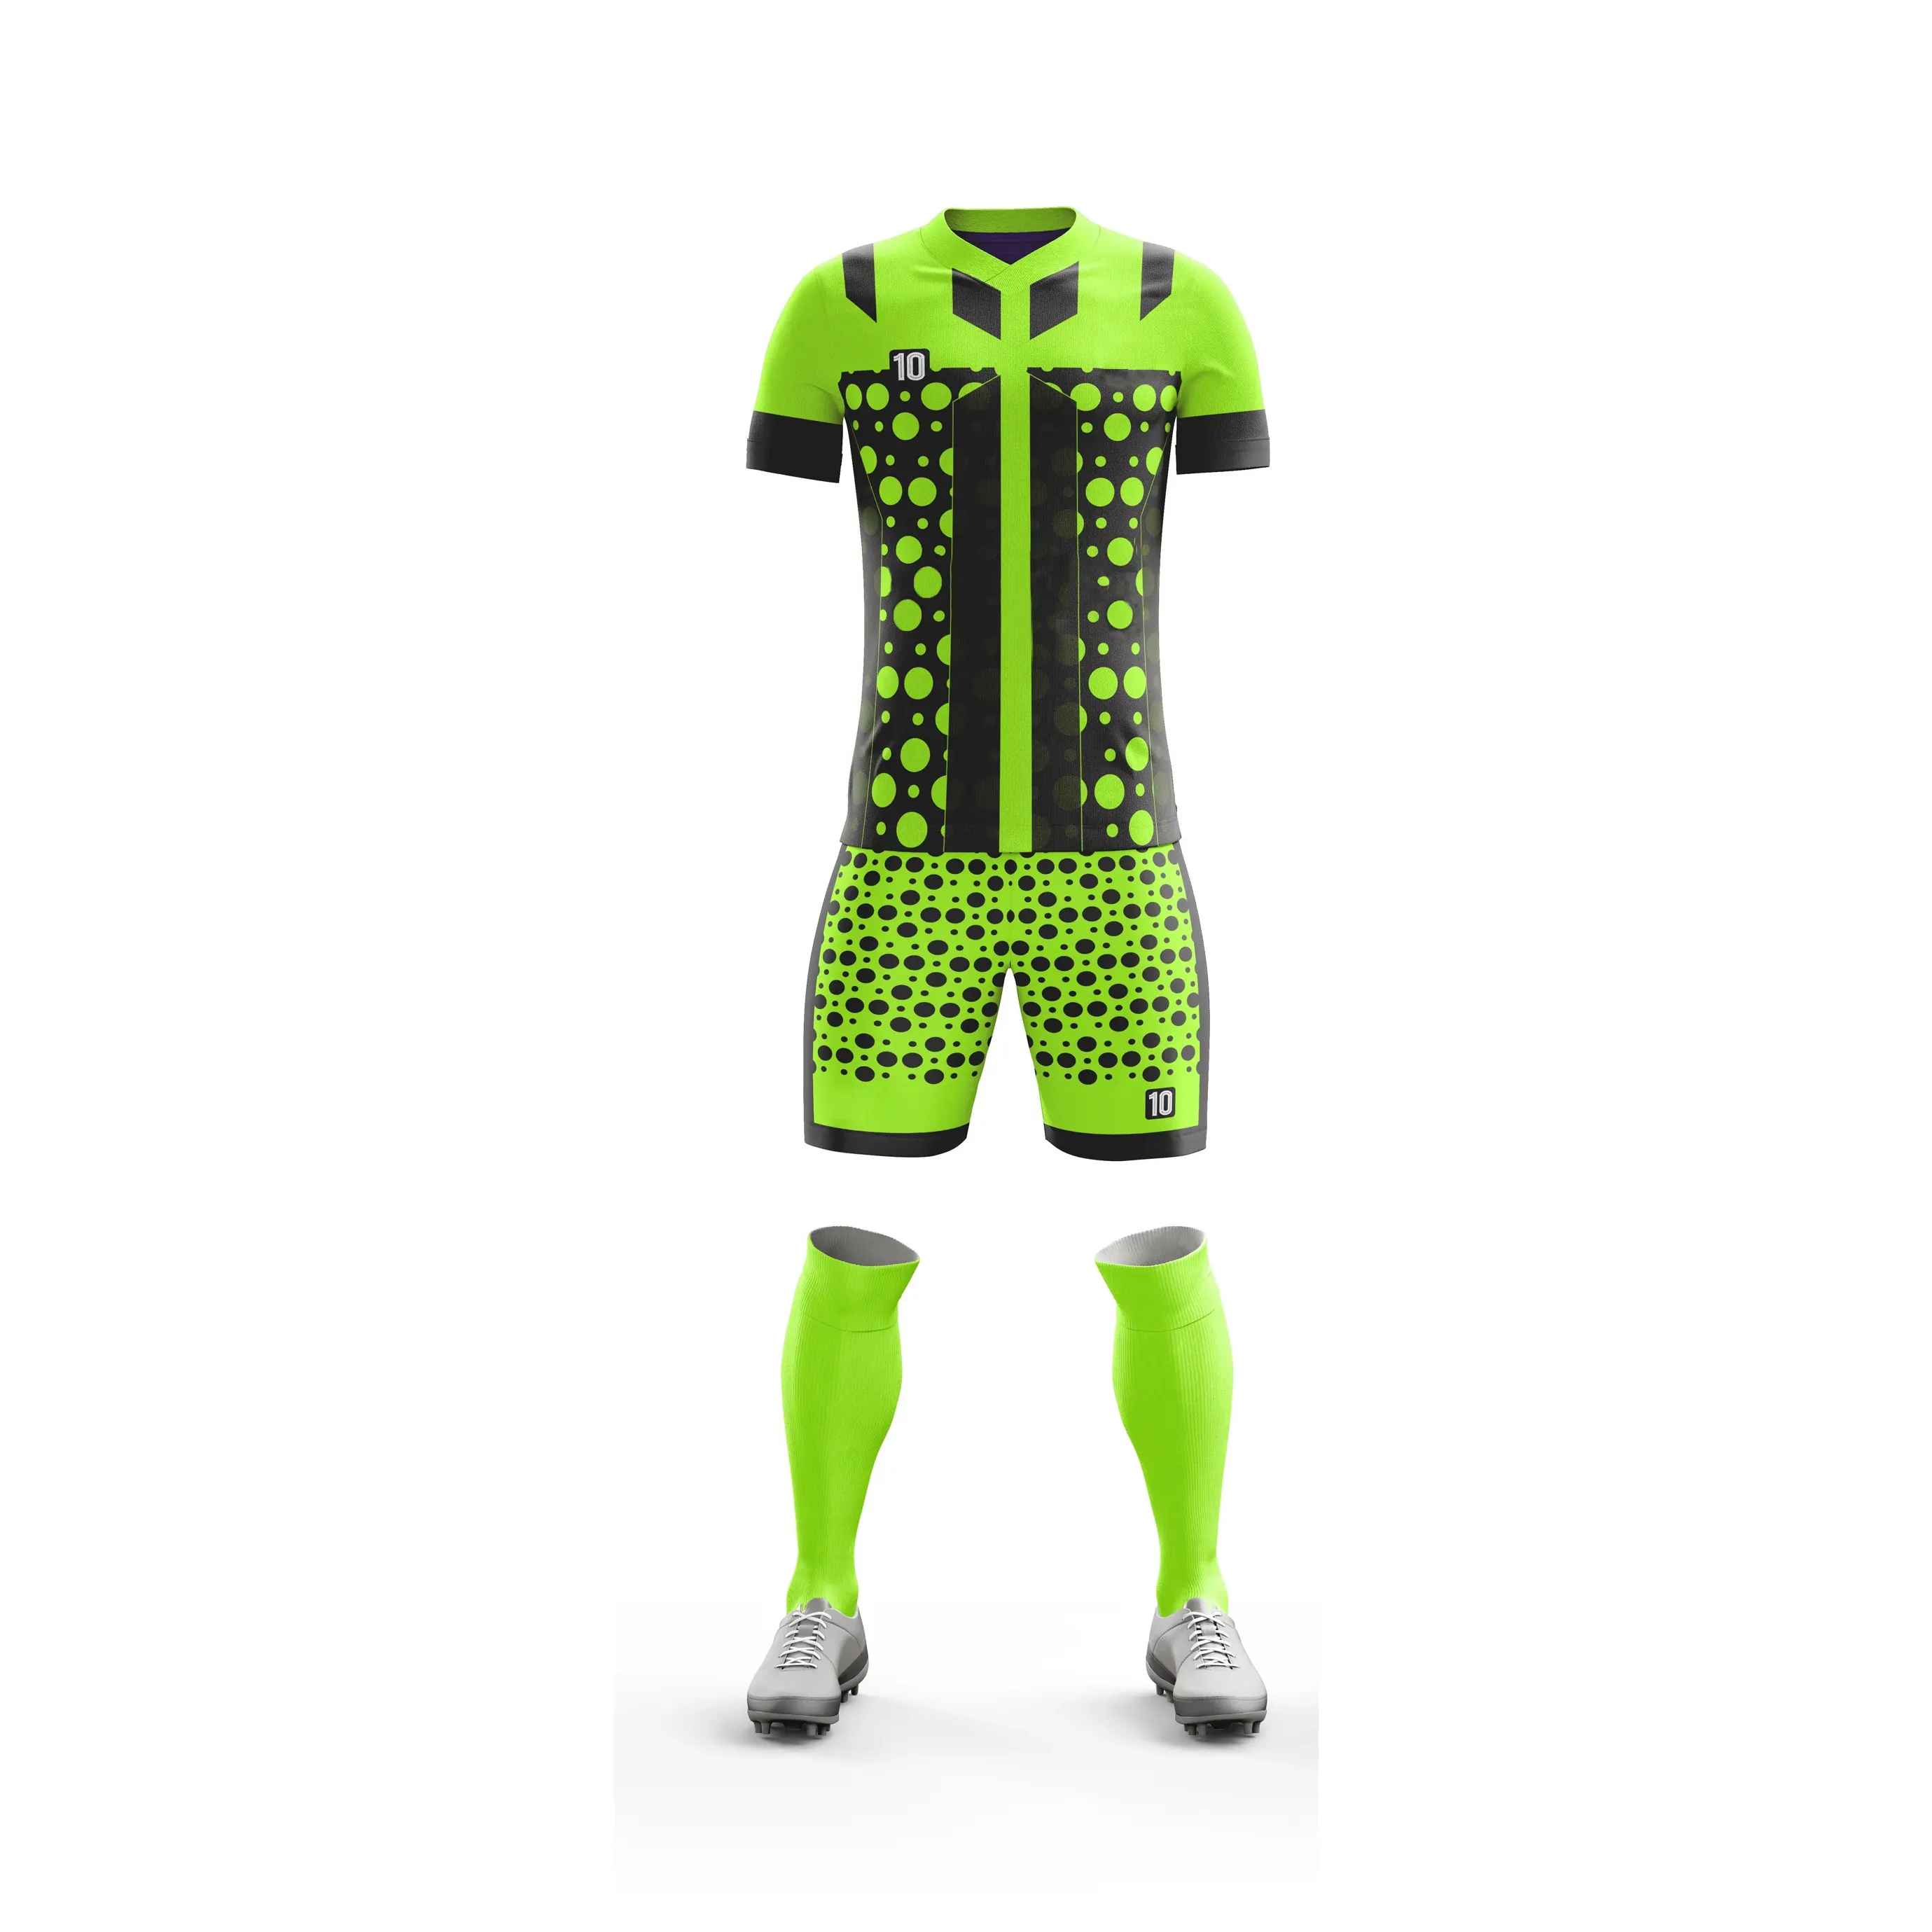 Venta al por mayor sublimación uniformes de fútbol conjunto de camisetas de fútbol 100% poliéster uniforme de fútbol precio bajo